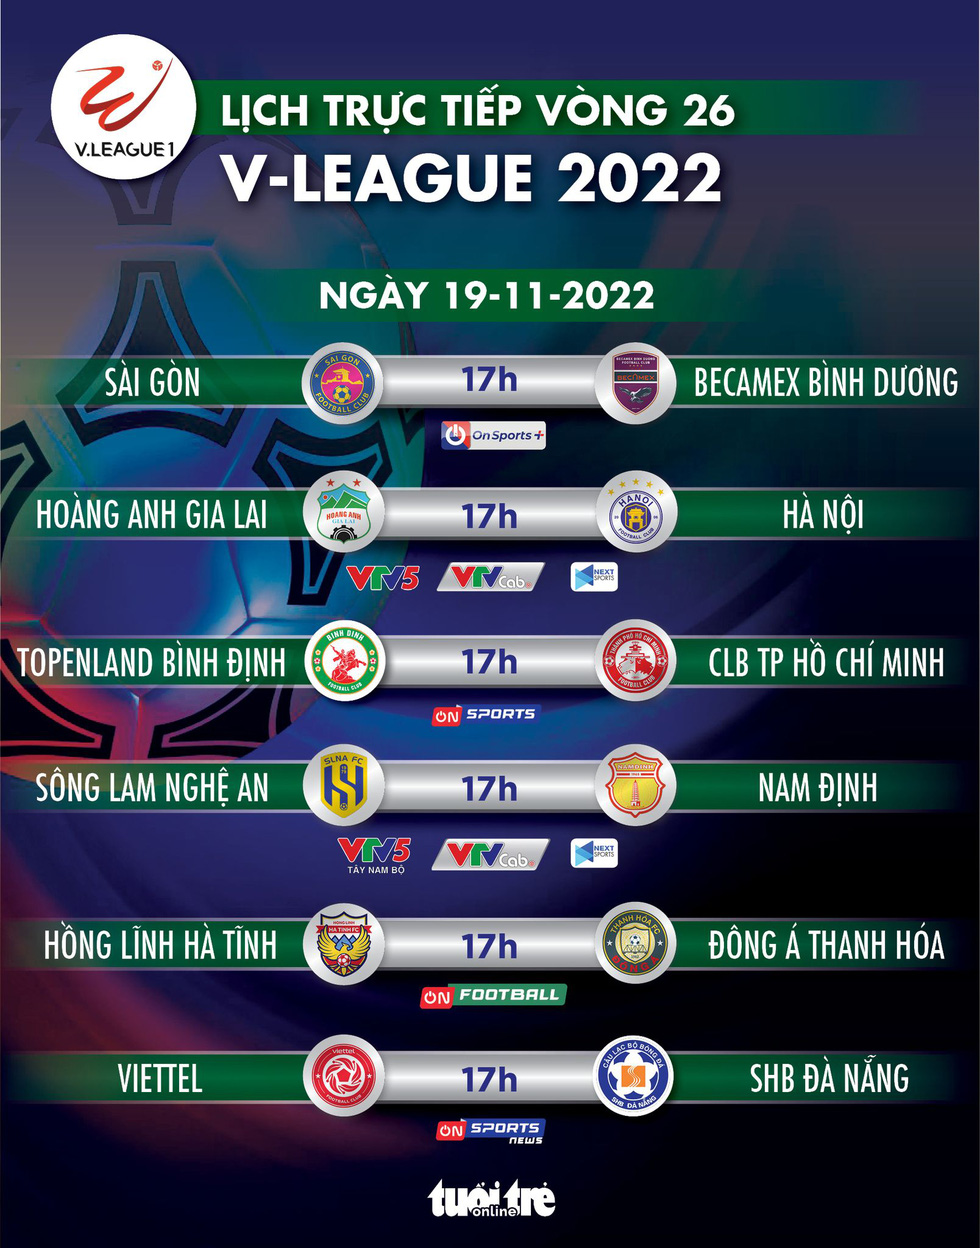 Lịch trực tiếp vòng 26 V-League 2022: Sài Gòn và Hà Tĩnh tranh trụ hạng - Ảnh 1.